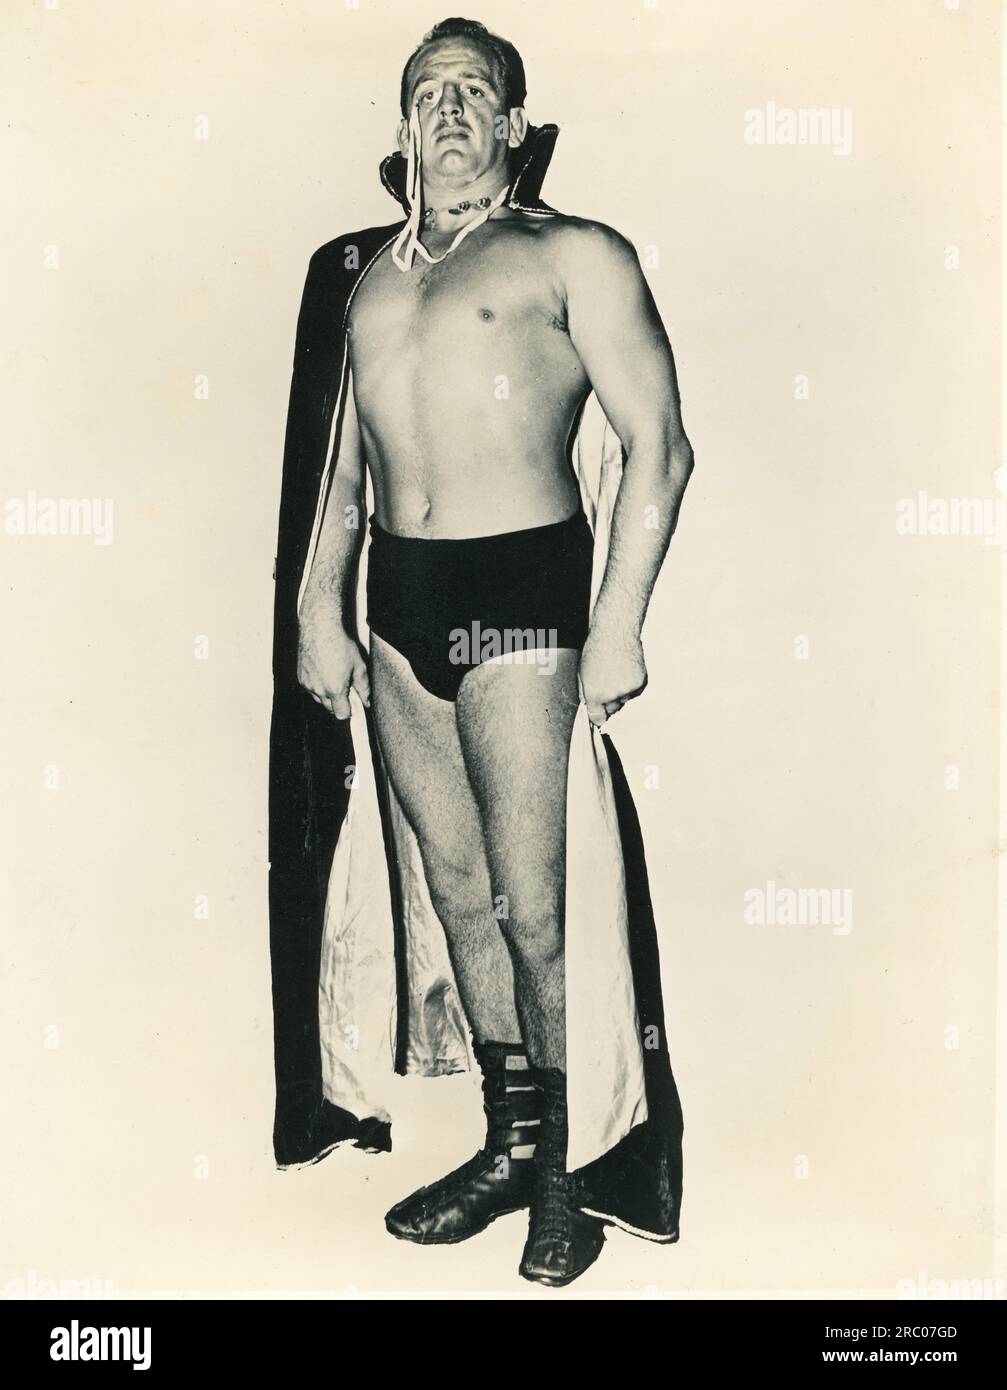 Lord Blears était un lutteur professionnel britannique et américain. Il était partenaire de Lord Athol Layton dans les années 1950 Ils étaient gérés par le capitaine Leslie Holmes. Banque D'Images